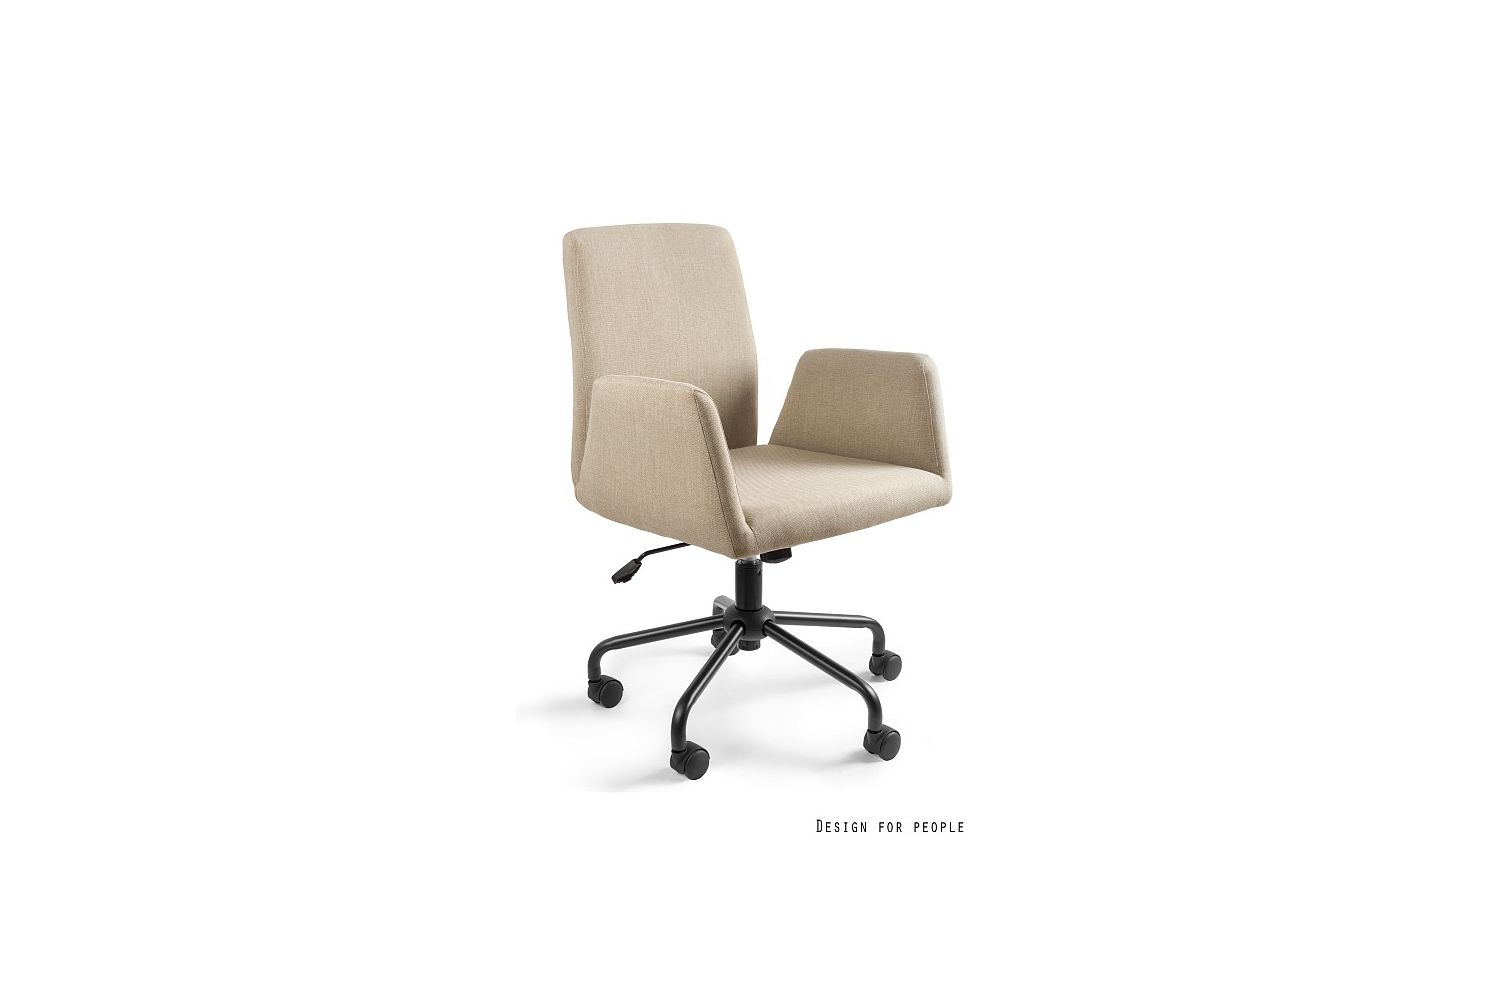 Kancelářská židle Beverly - více barev